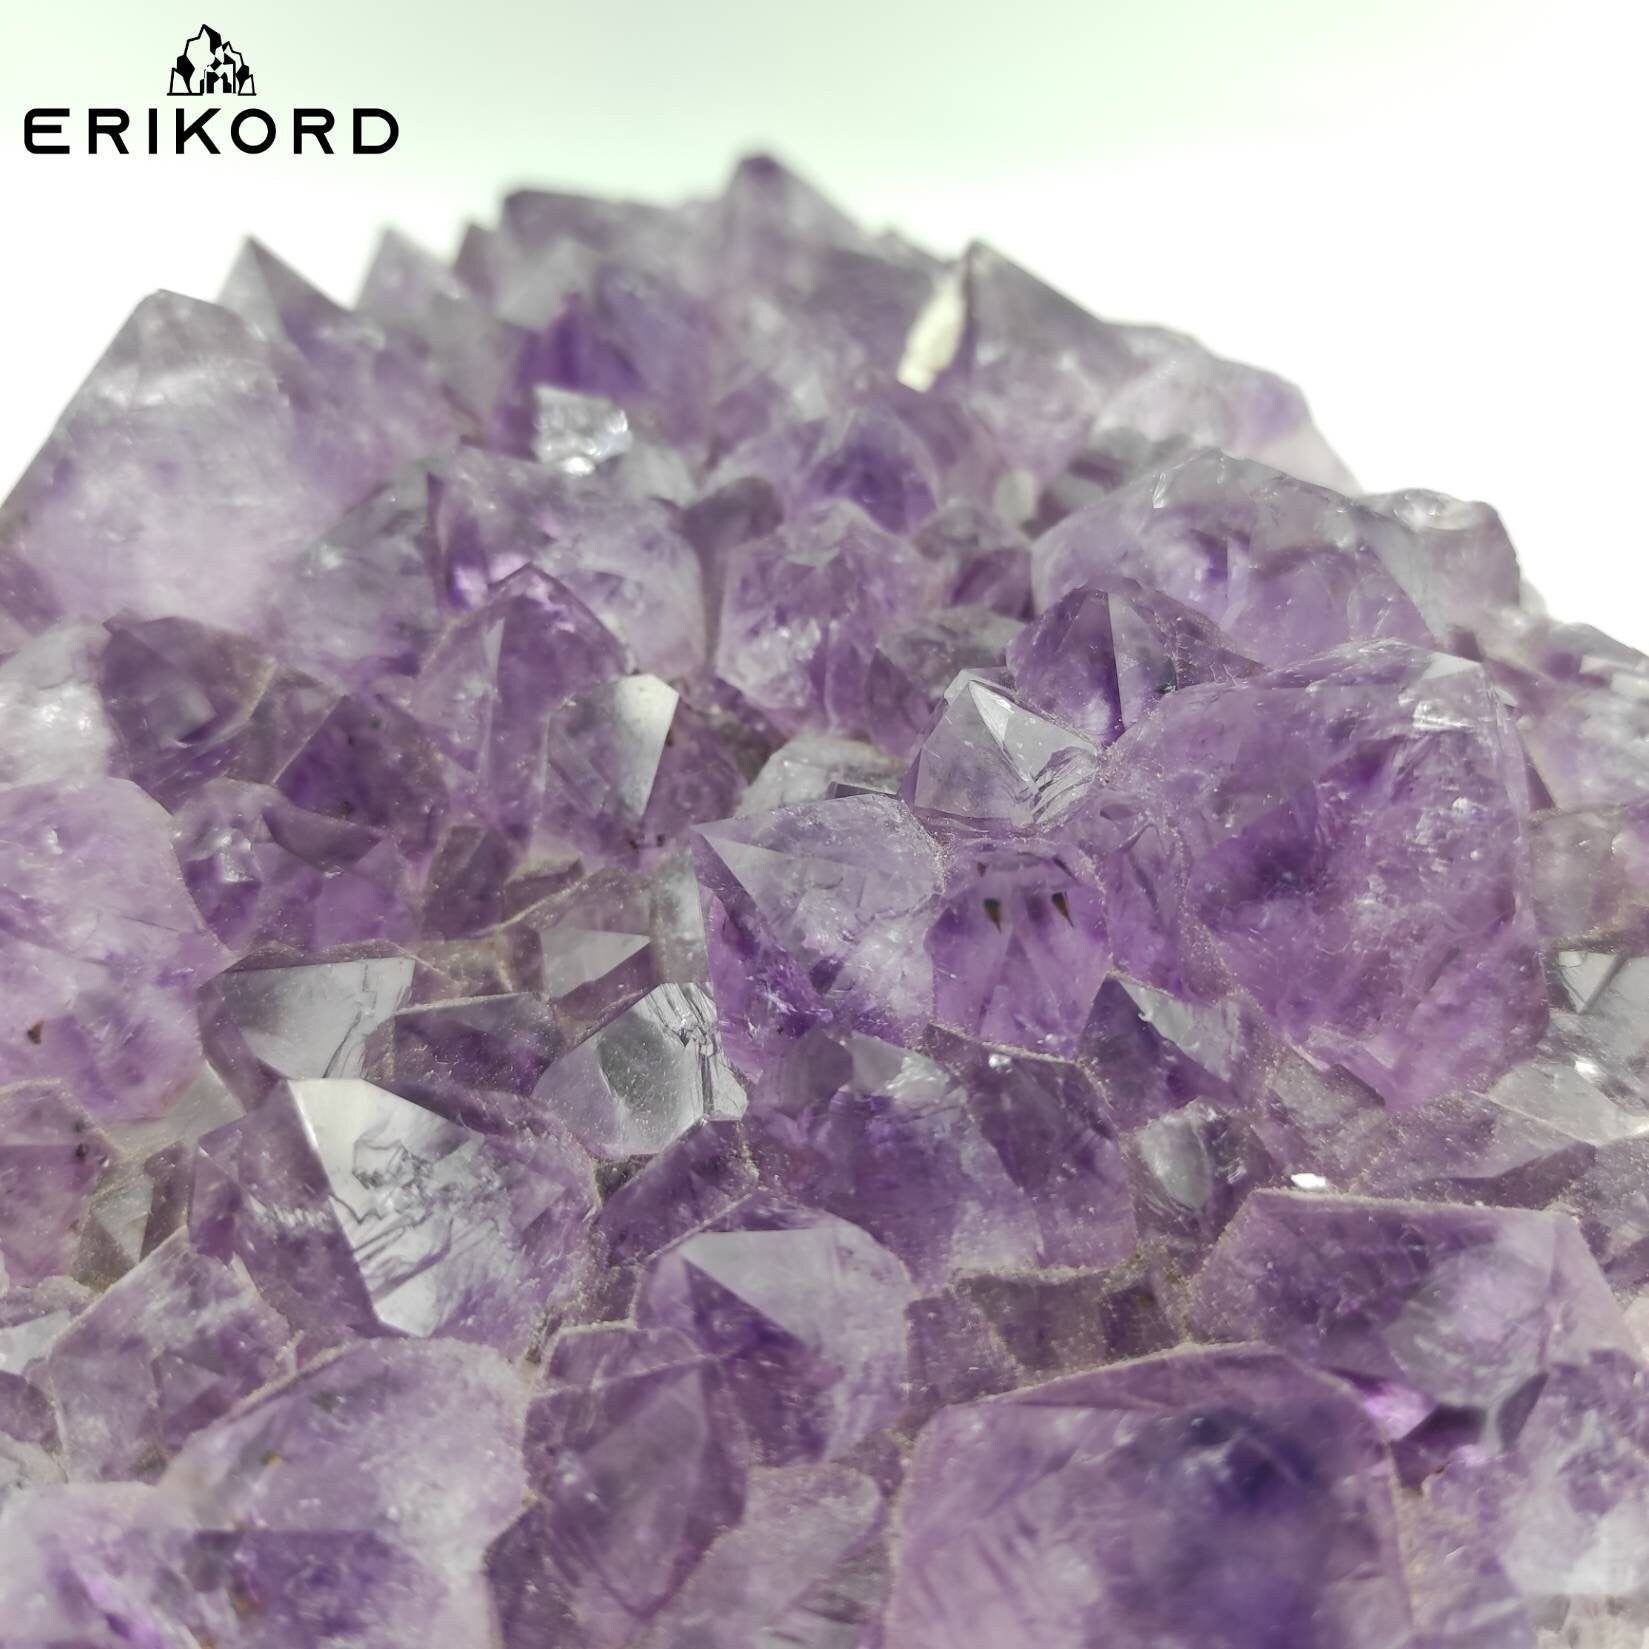 2.4 kg Amethyst Crystal Cluster Purple Amethyst from South Brazil Amethyst Gemstone Raw Amethyst Rough Amethyst Desk Crystal Natural Crystal